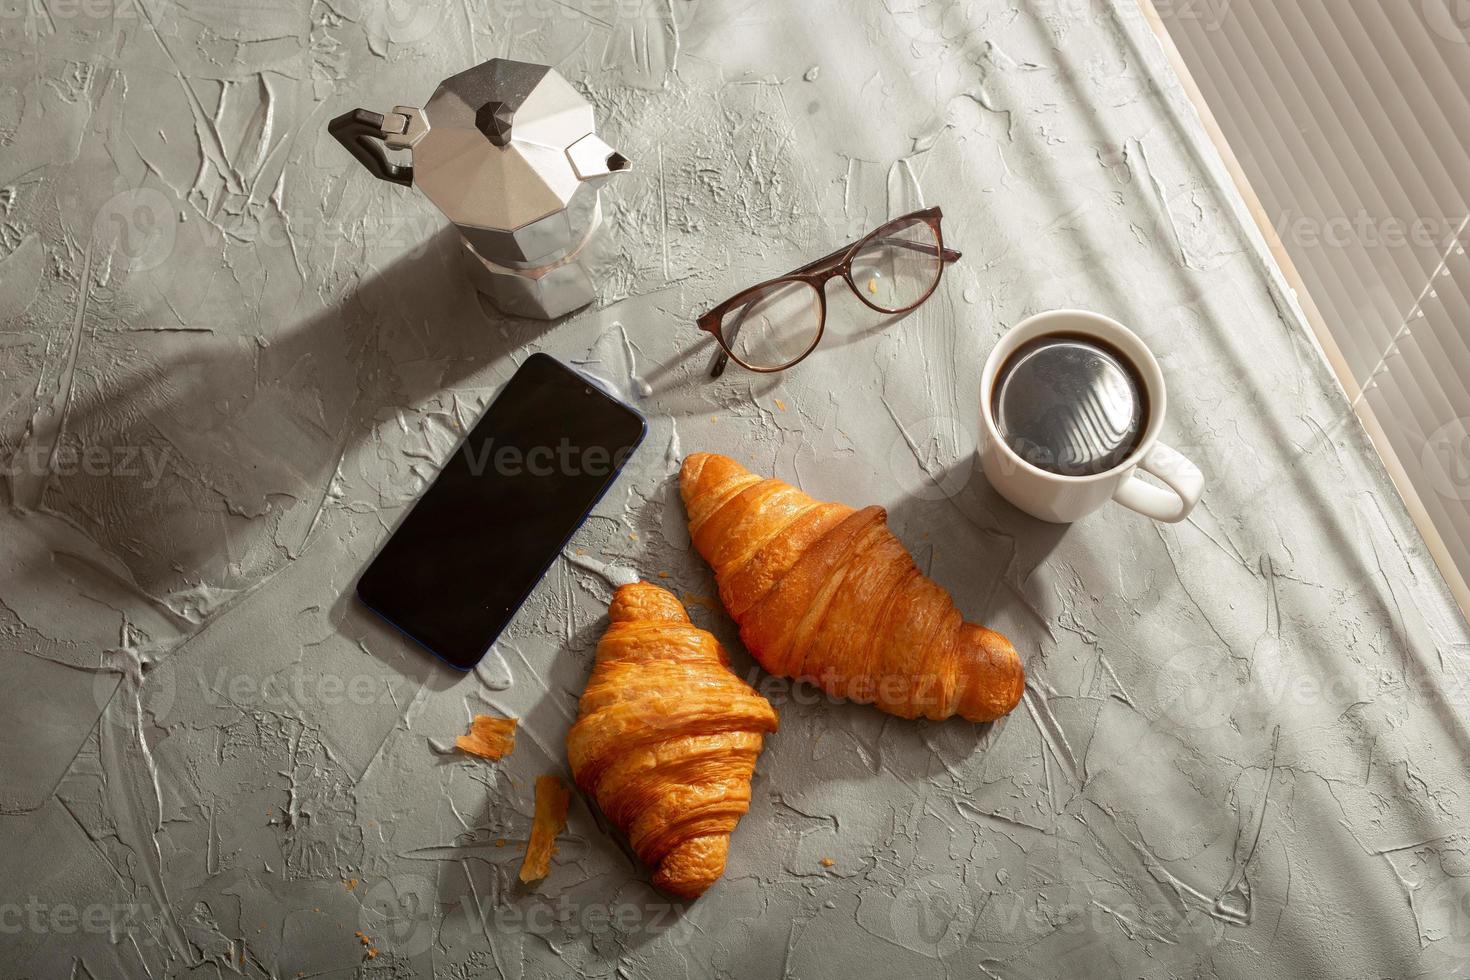 ontbijt met croissant en koffie en mokka pot. ochtend- maaltijd en ontbijt concept. foto